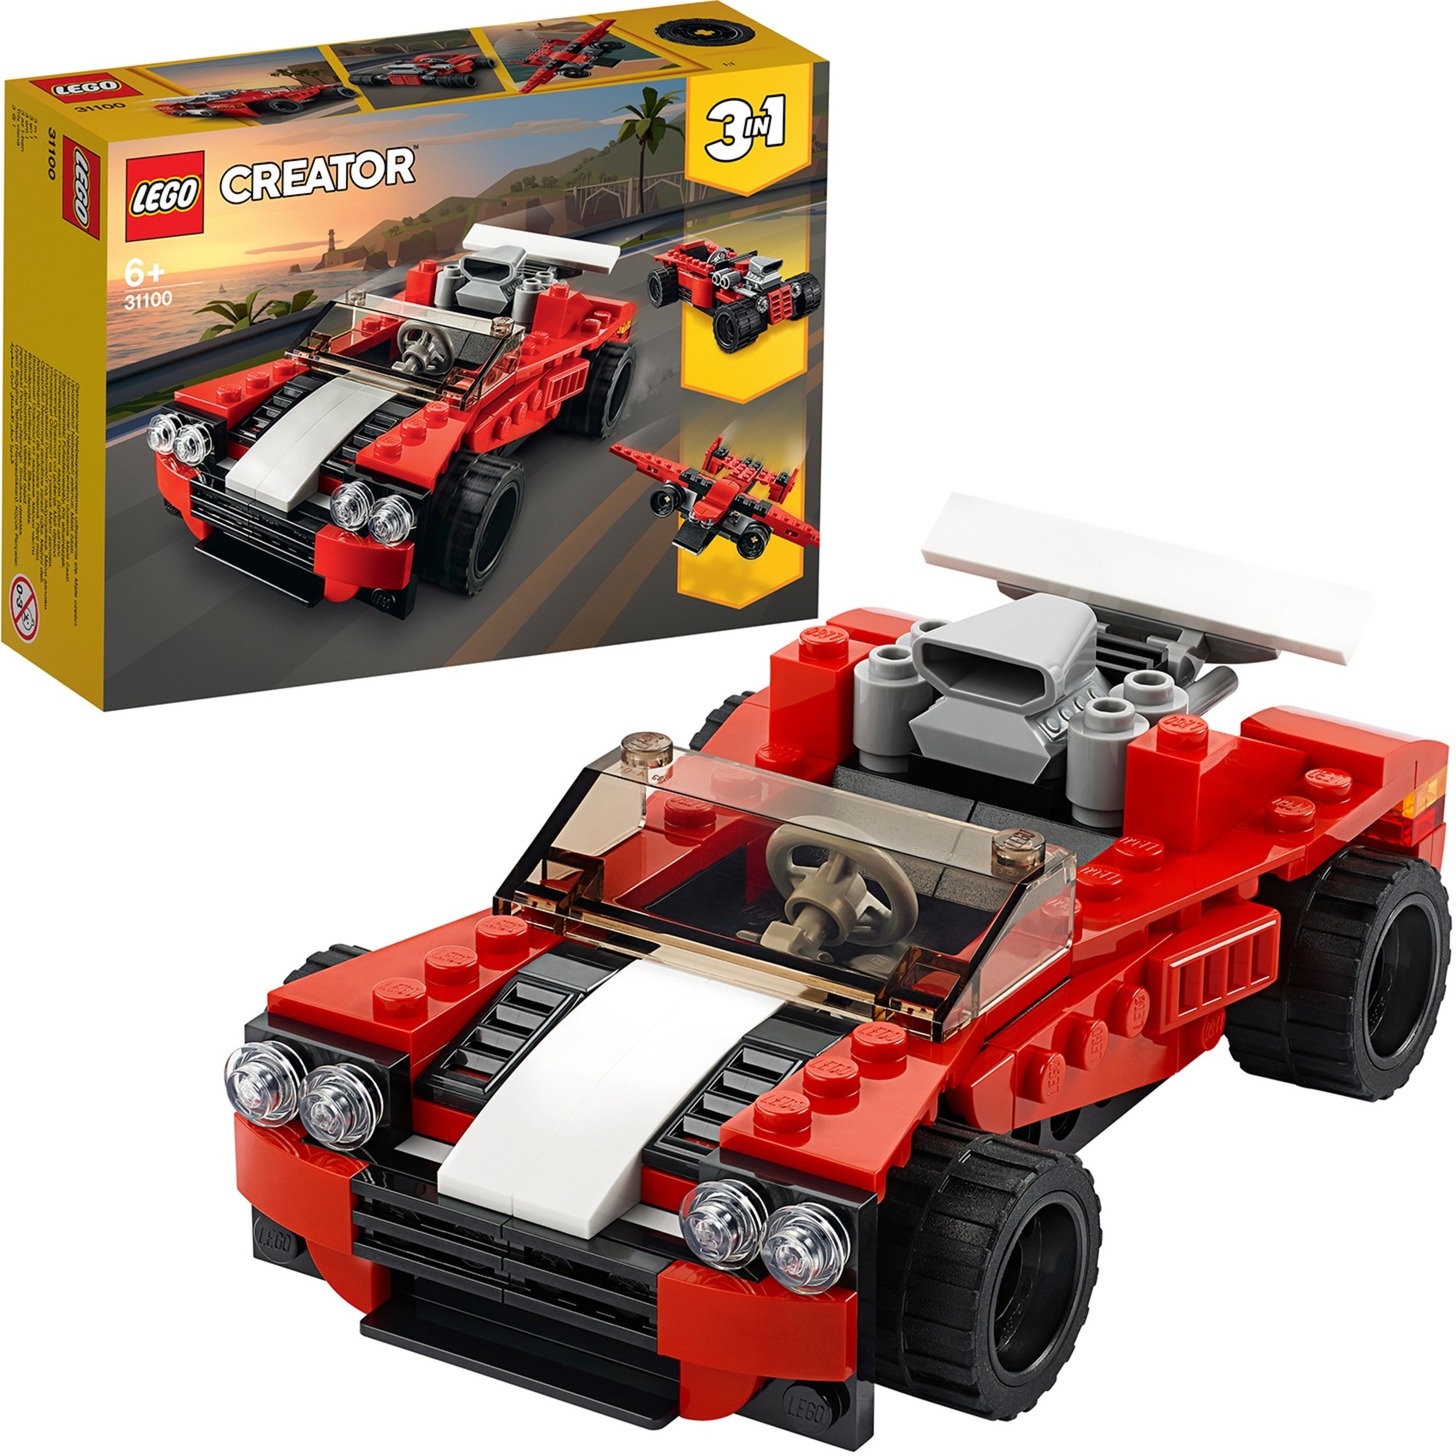 Spielzeug: Lego 31100 Creator Sportwagen